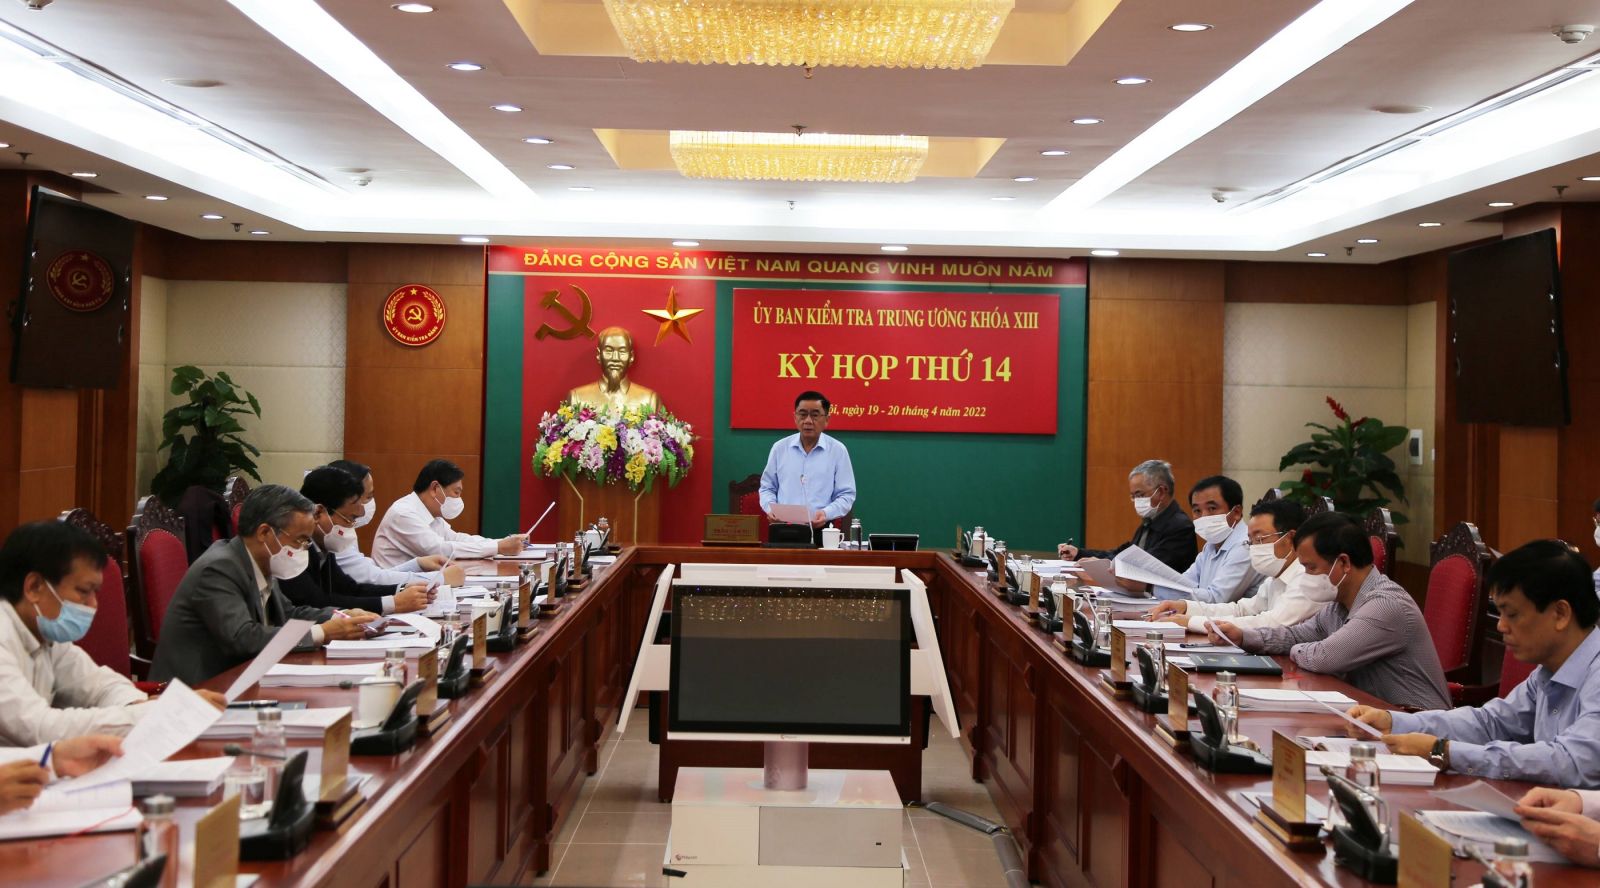 Qua giải quyết tố cáo, Ủy ban Kiểm tra Trung ương kỷ luật Phó Chủ tịch tỉnh Ninh Bình - Ảnh 1.